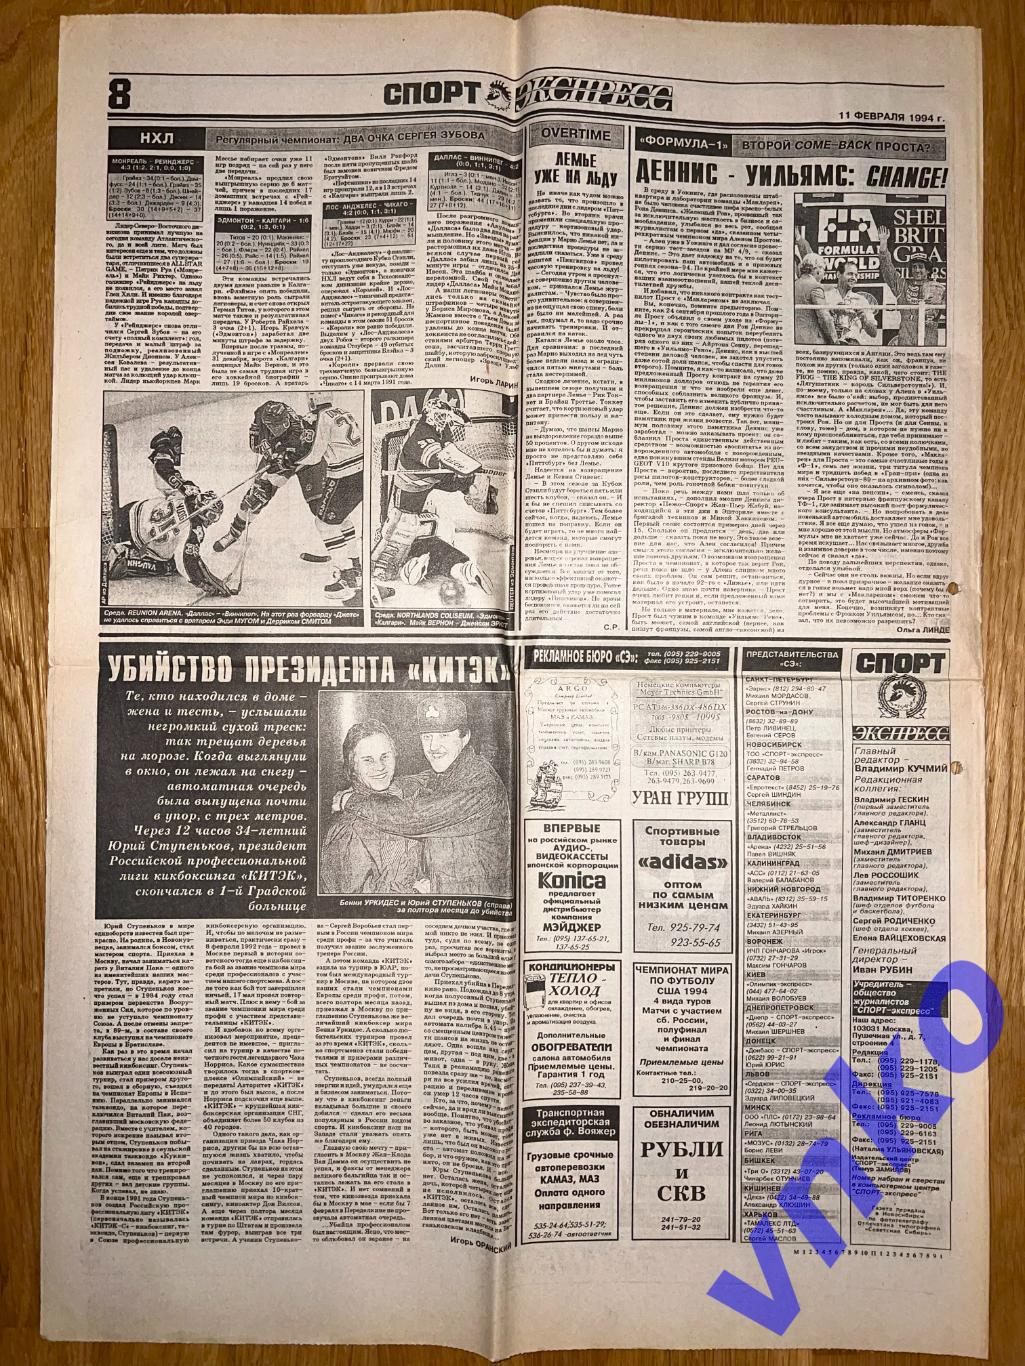 Спорт-Экспресс от 11.02.1994, 8 стр. 1